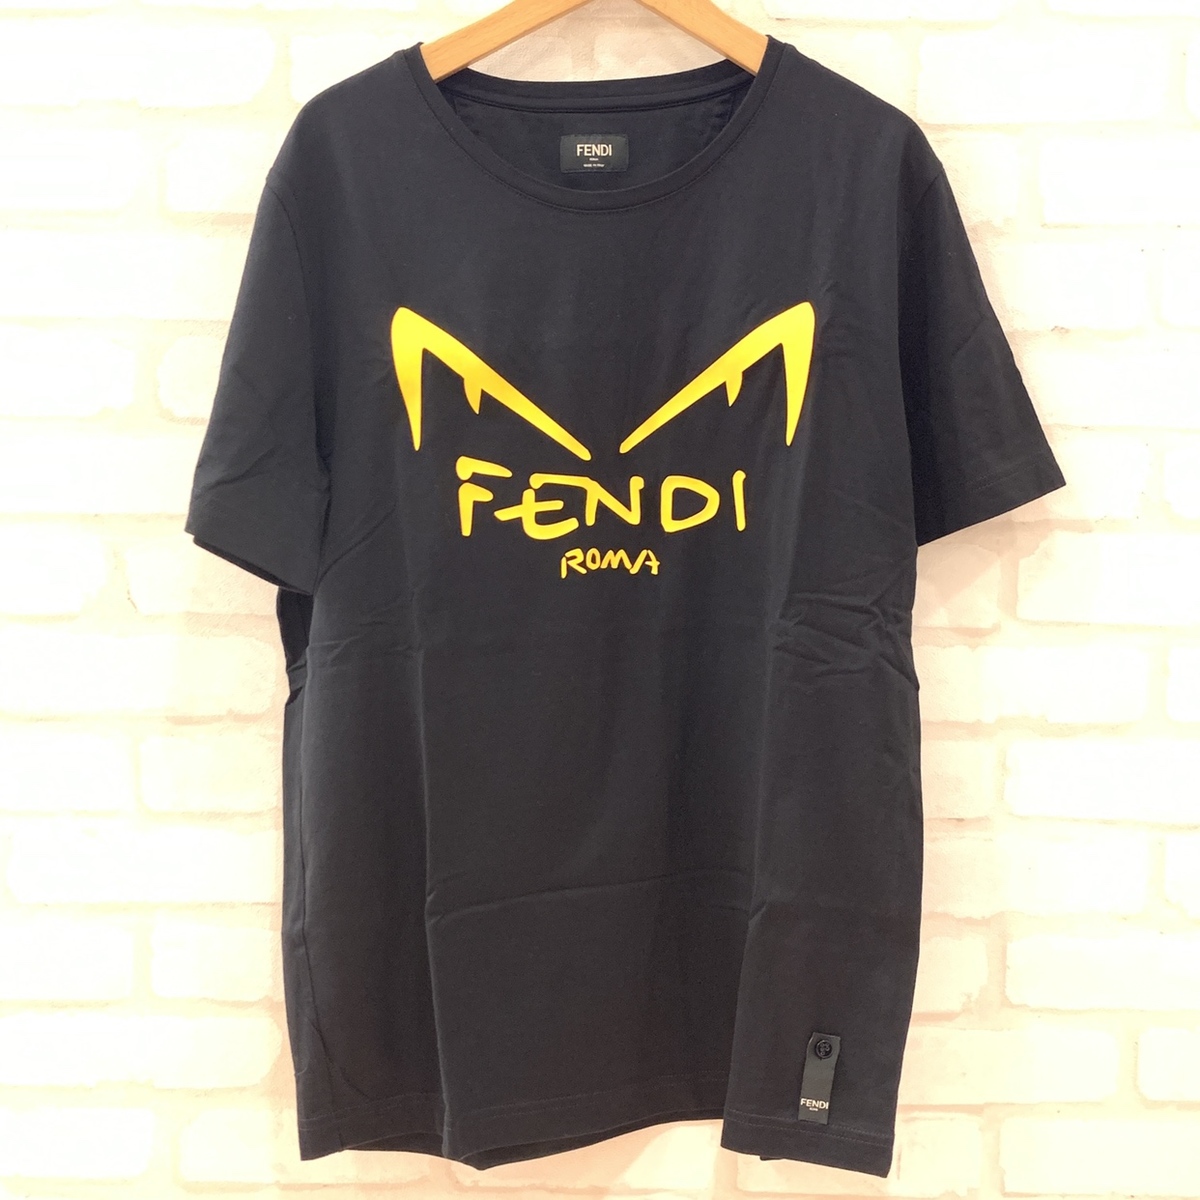 フェンディの並行 18年製 ディアボリックアイズ Tシャツの買取実績です。